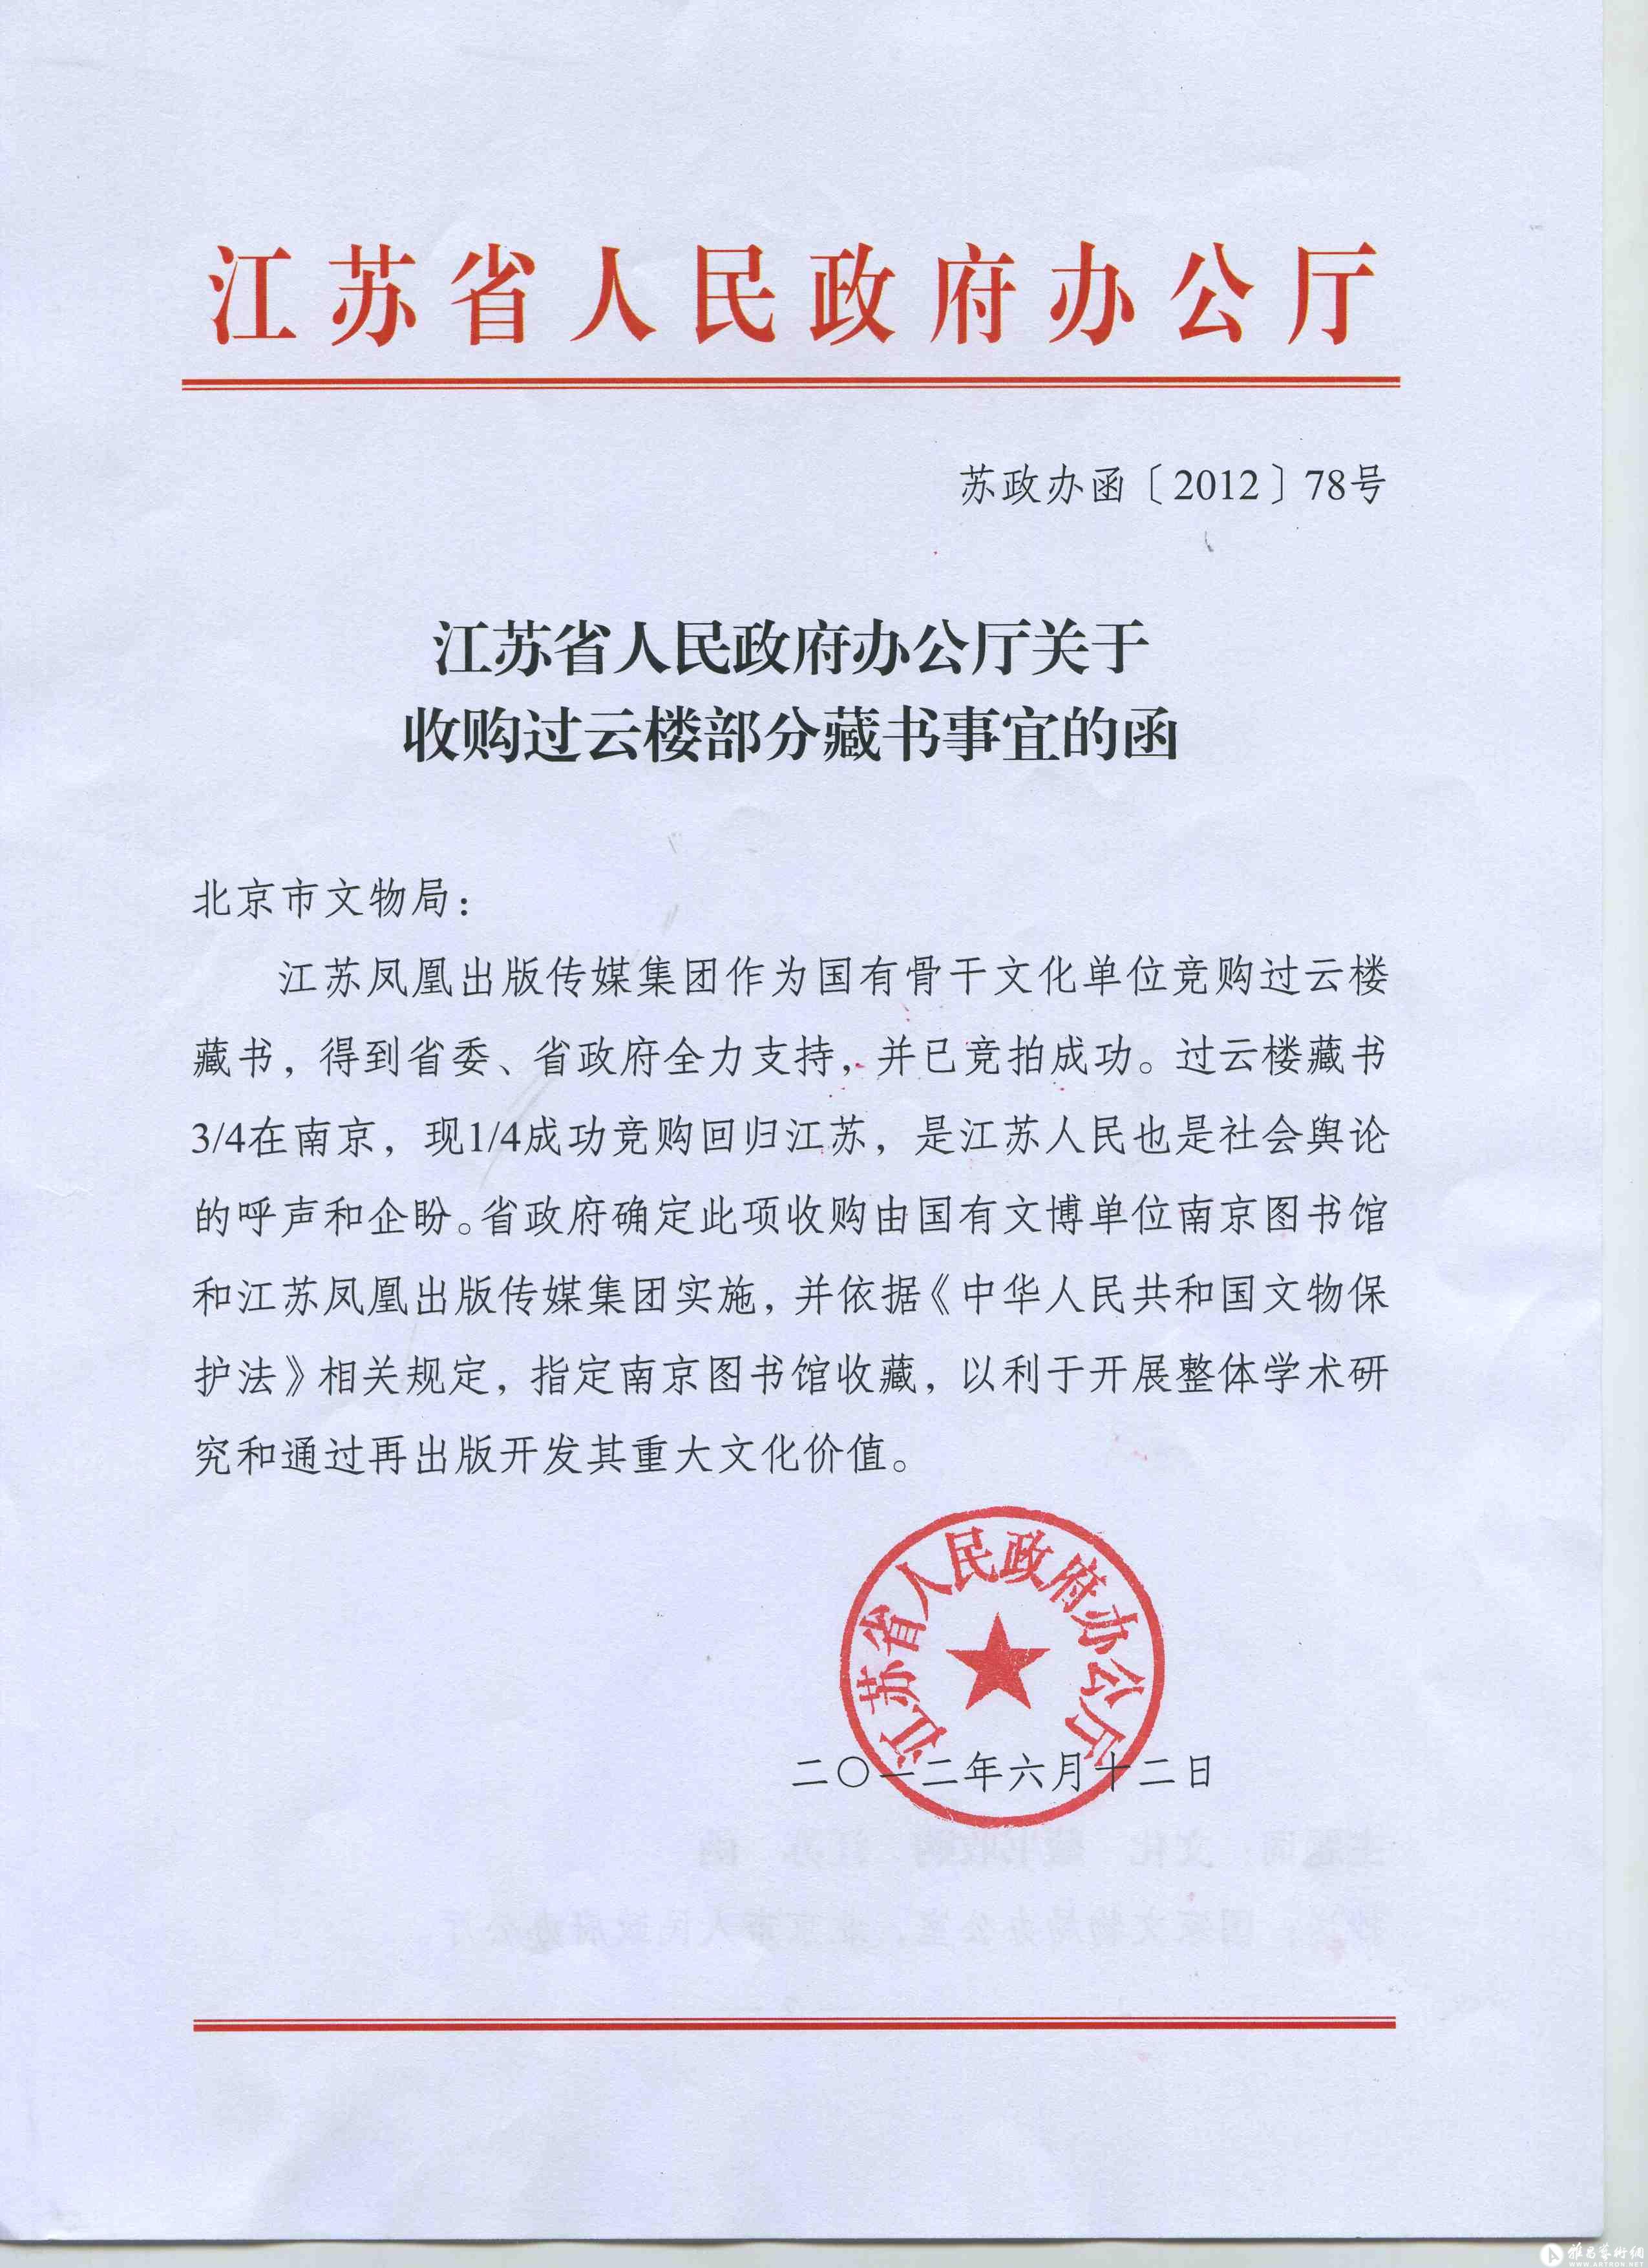 江苏省人民政府办公厅关于收购过云楼部分藏书事宜的函6月12日下午,在